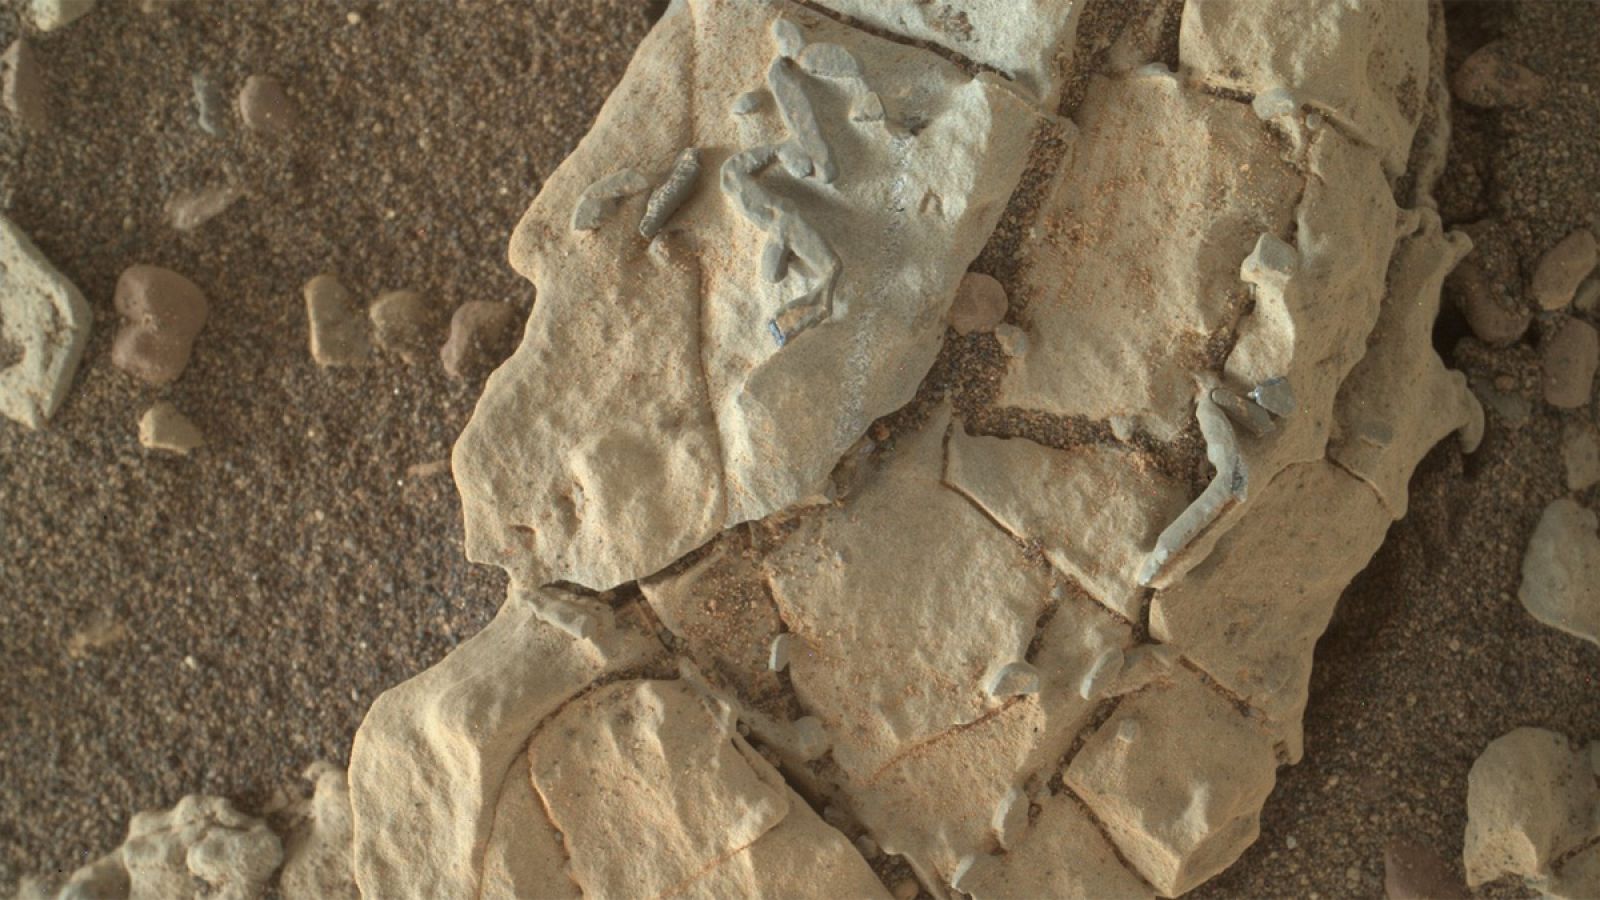 Las imágenes muestran rocas con rasgos que recuerdan a bastones.